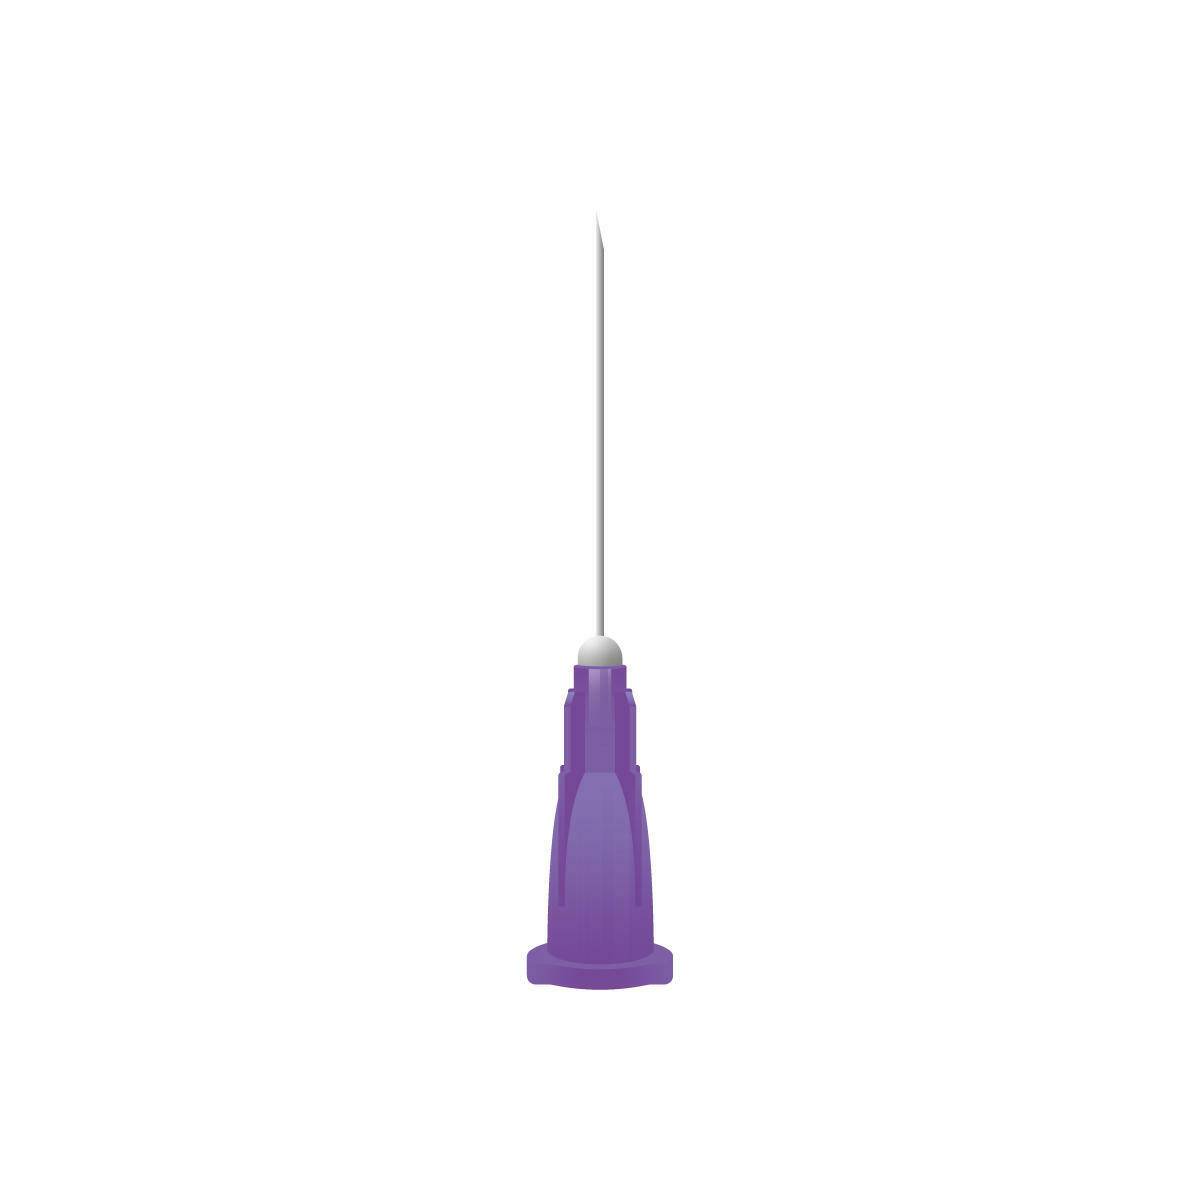 24g Purple 1 inch Unisharp Needles - UKMEDI